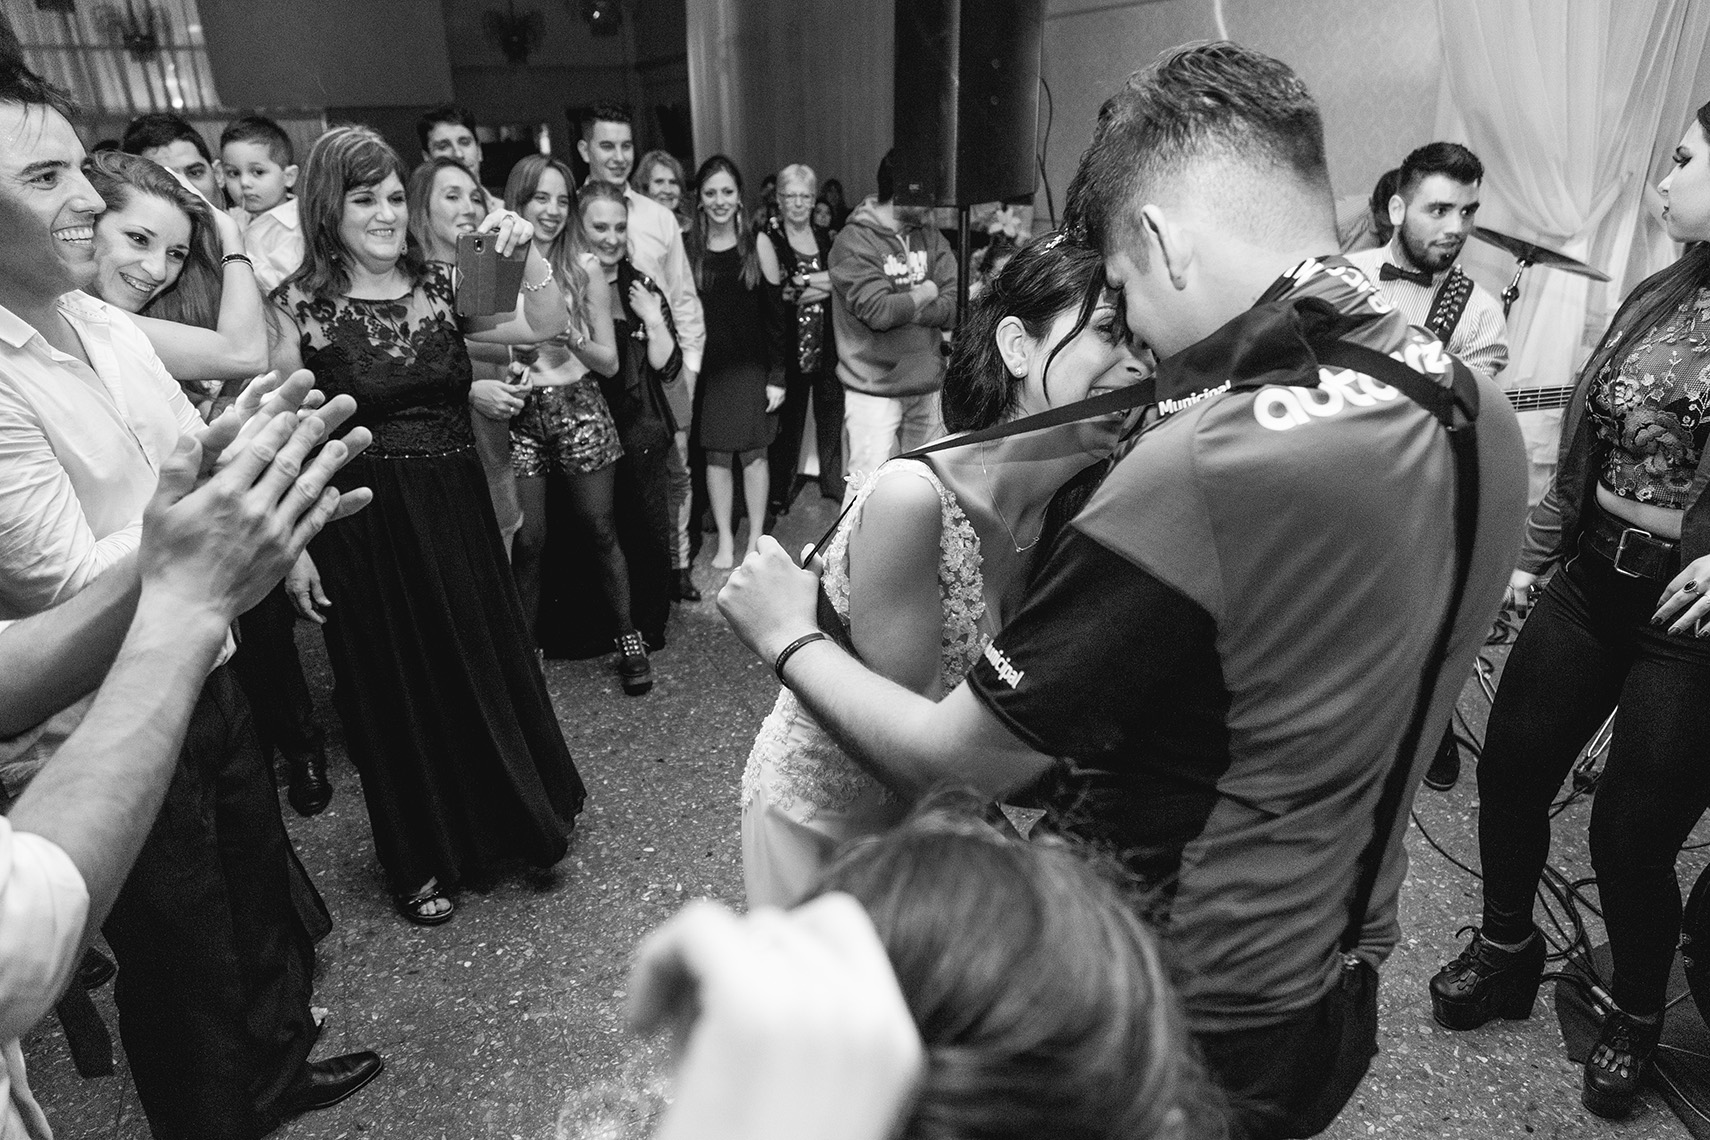 Fotos de la boda de Cintia y Cristian en Rosario realizadas por Bucle Fotografias. Flor Bosio y Caro Clerici